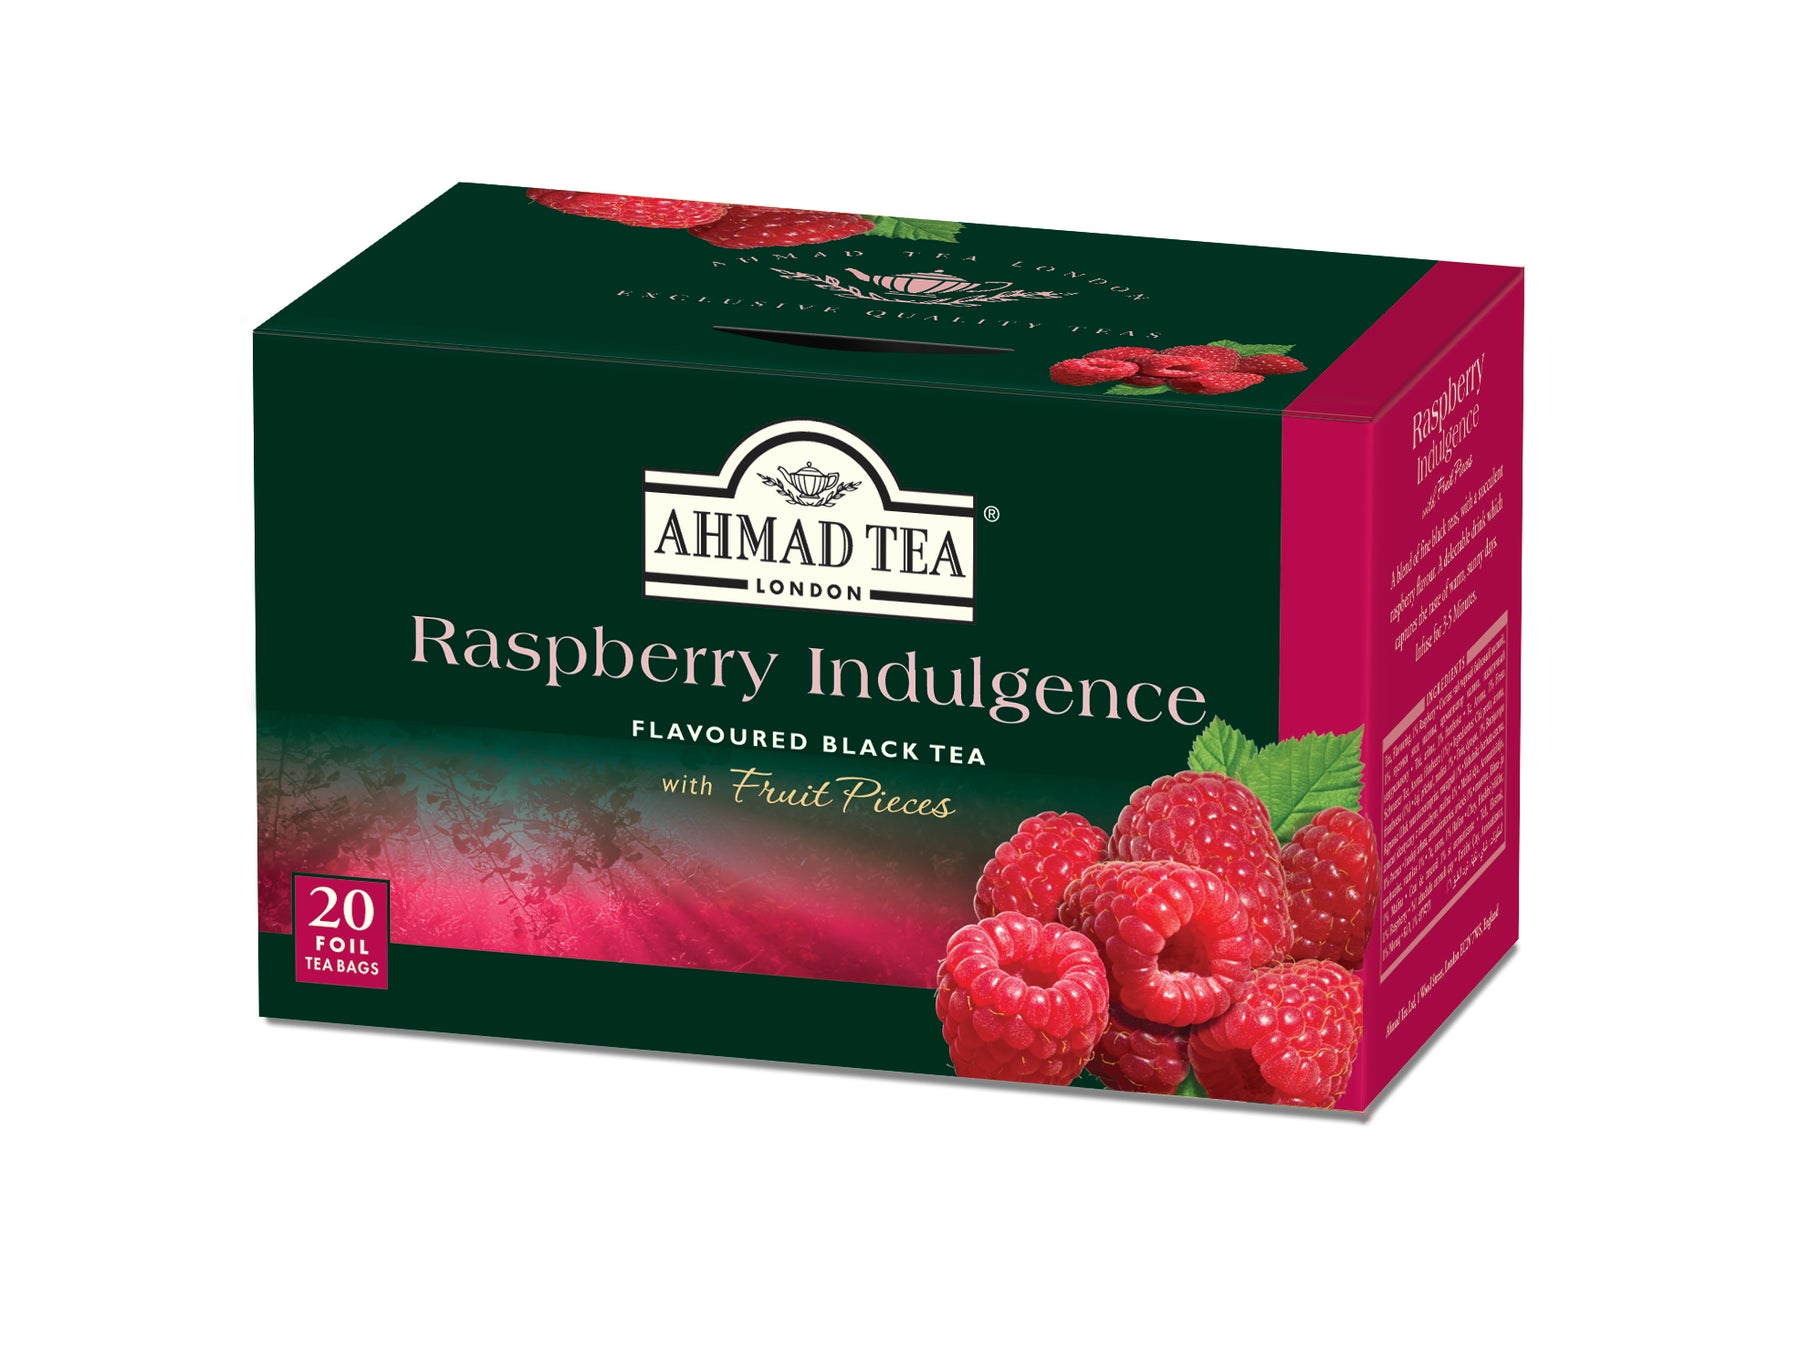 Ahmad Raspberry Indulgence Black Tea